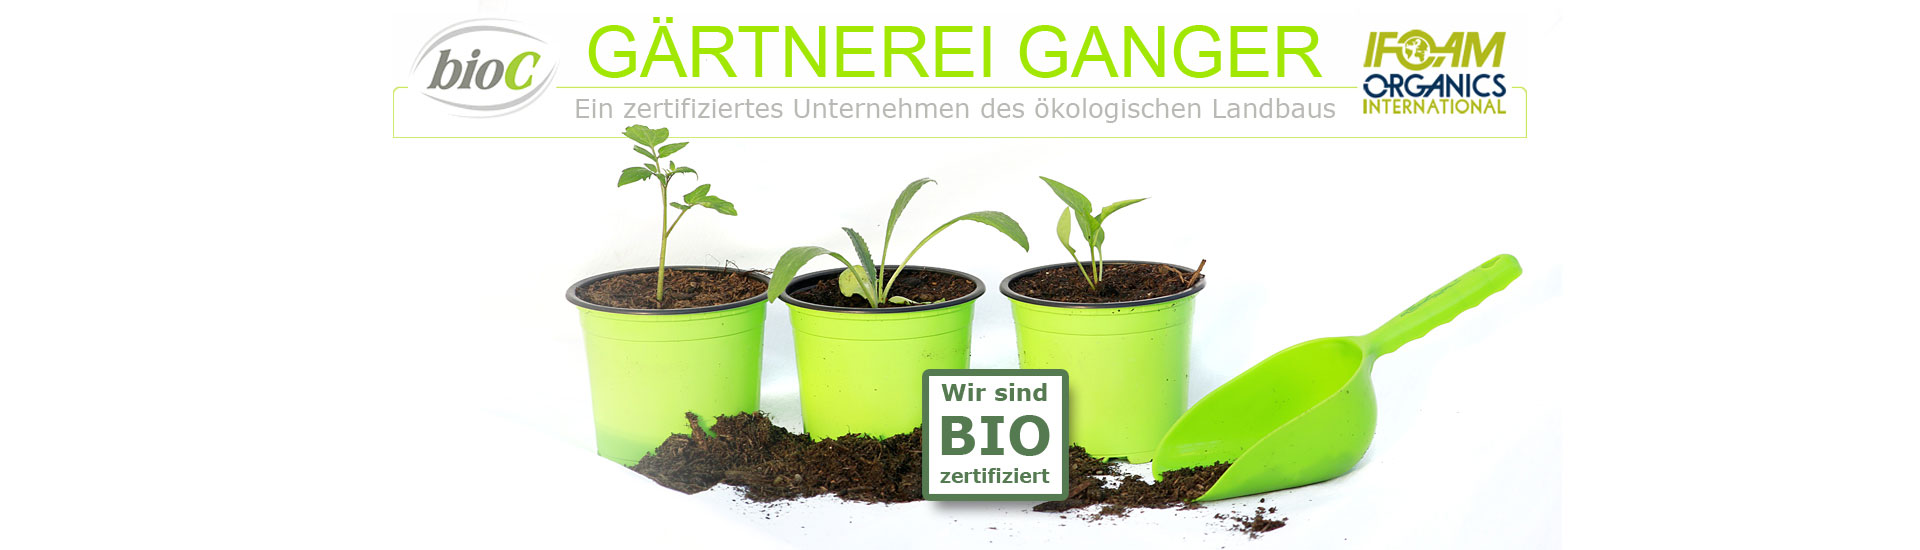 Gärtnerei Ganger | Genuss | Gemüse | Obst | Pflanzen | Floristik